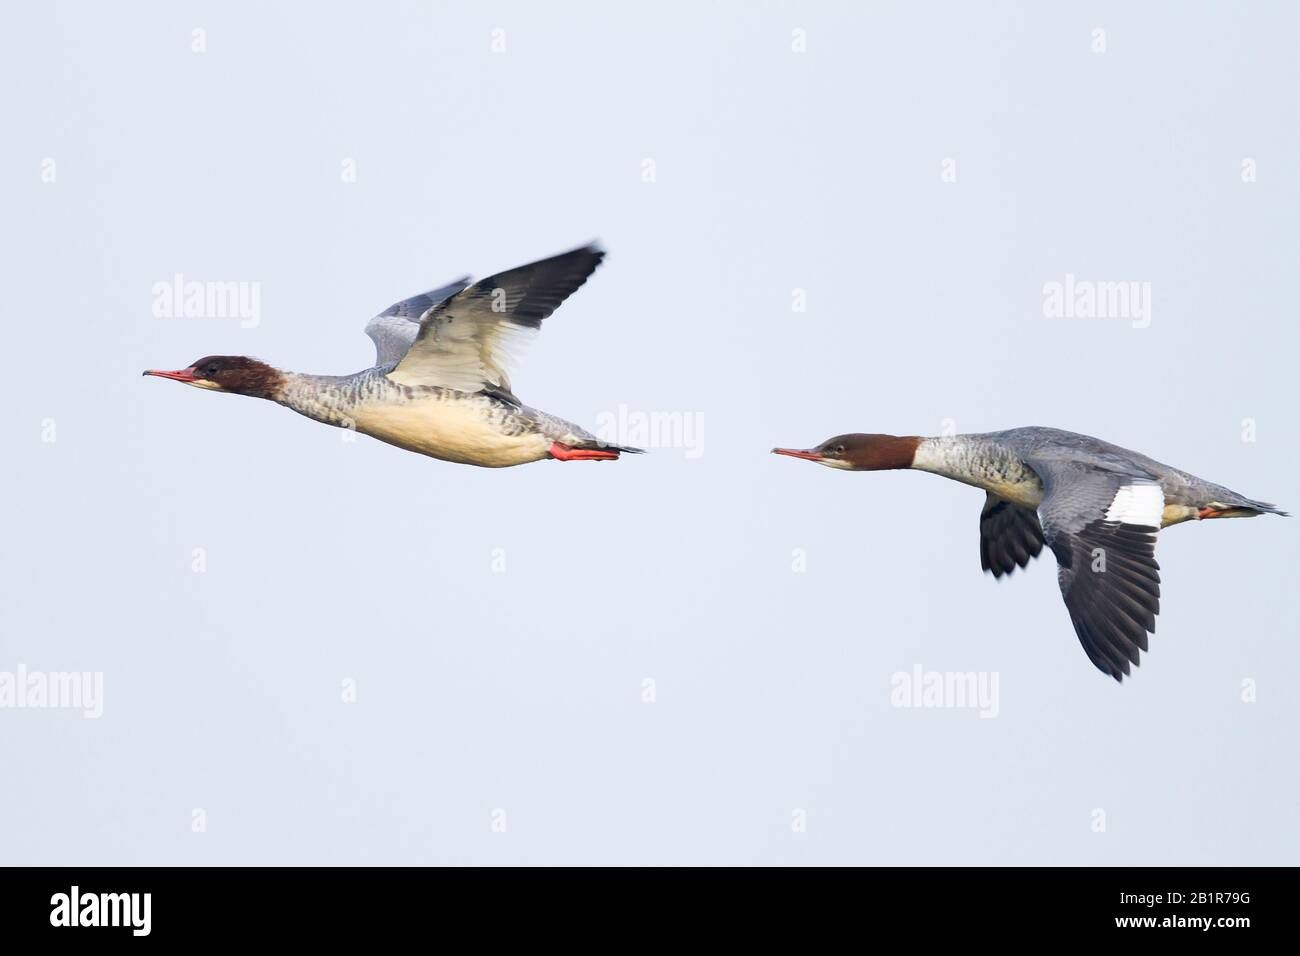 goosander (Mergus merganser), two birds in flight, Germany Stock Photo